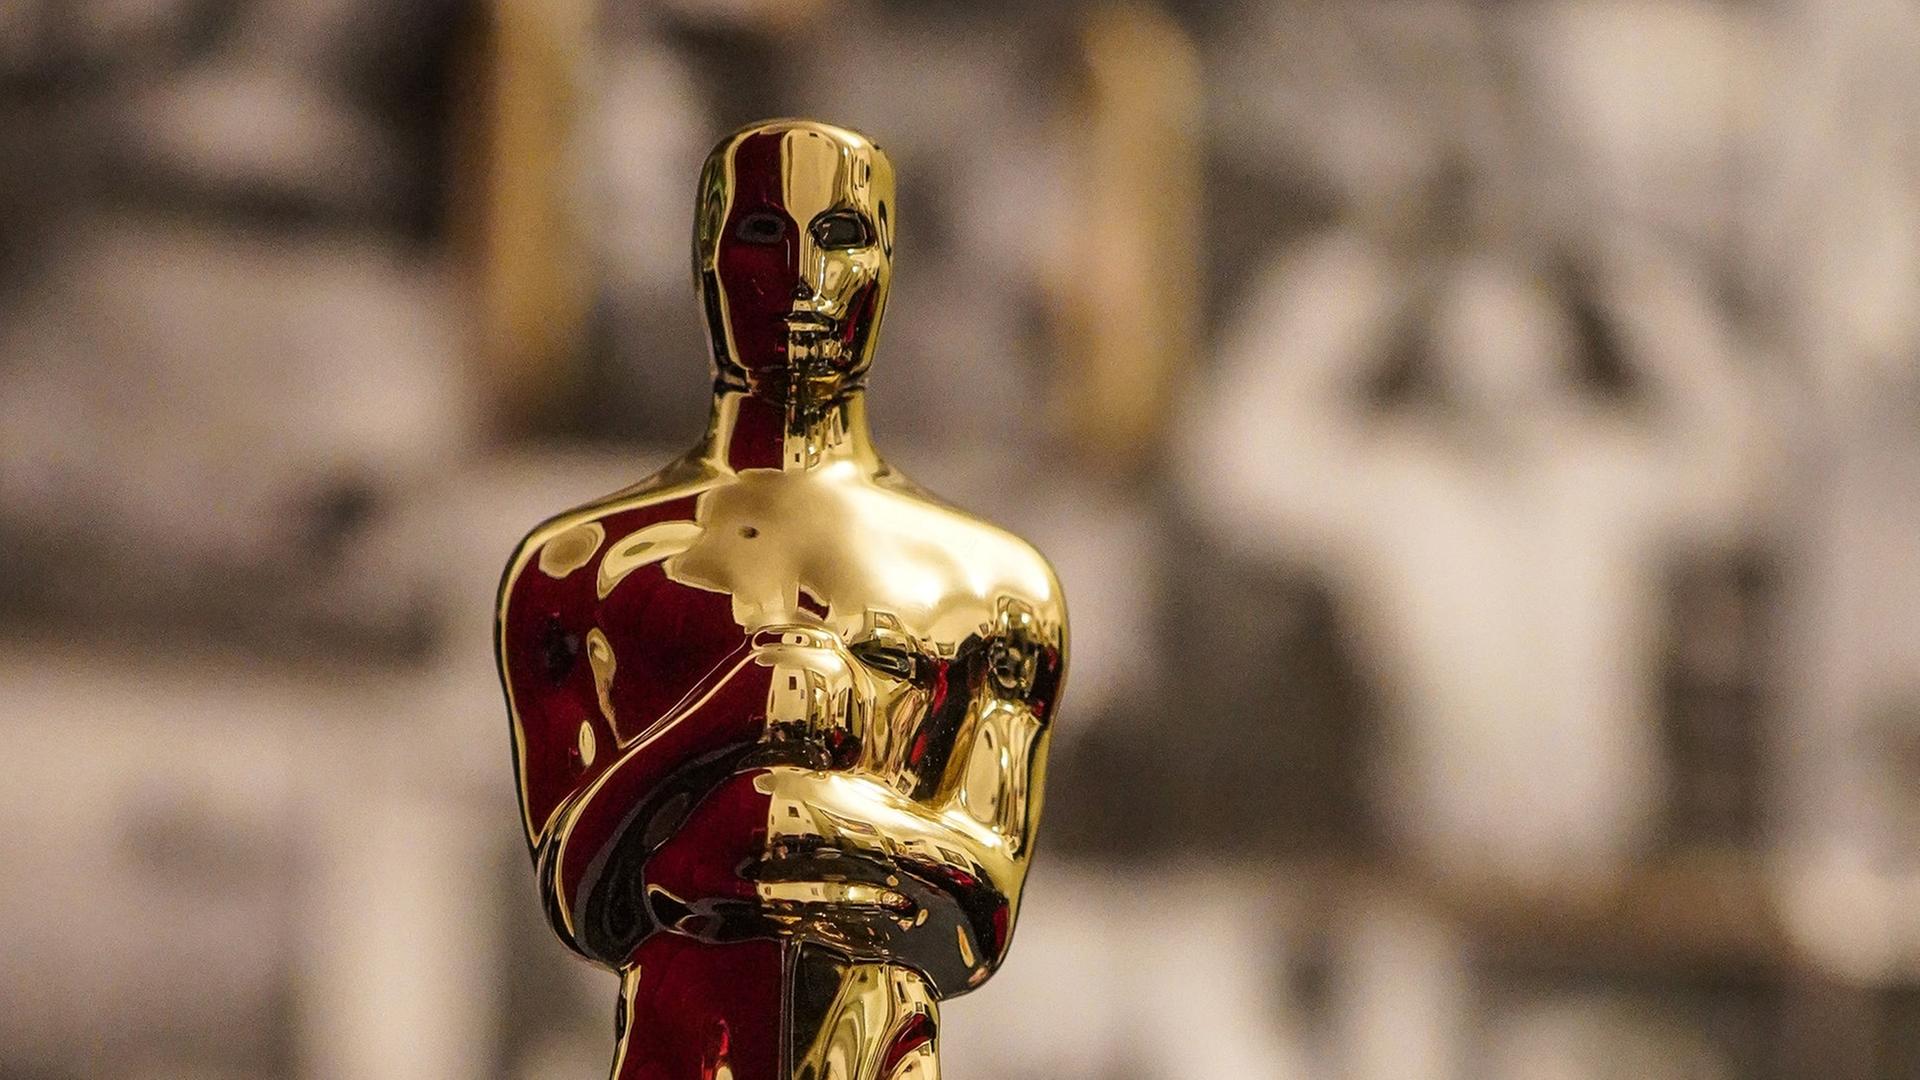 Oscar, die goldene Statue mit glattem Kopf und Händen vor der Brust